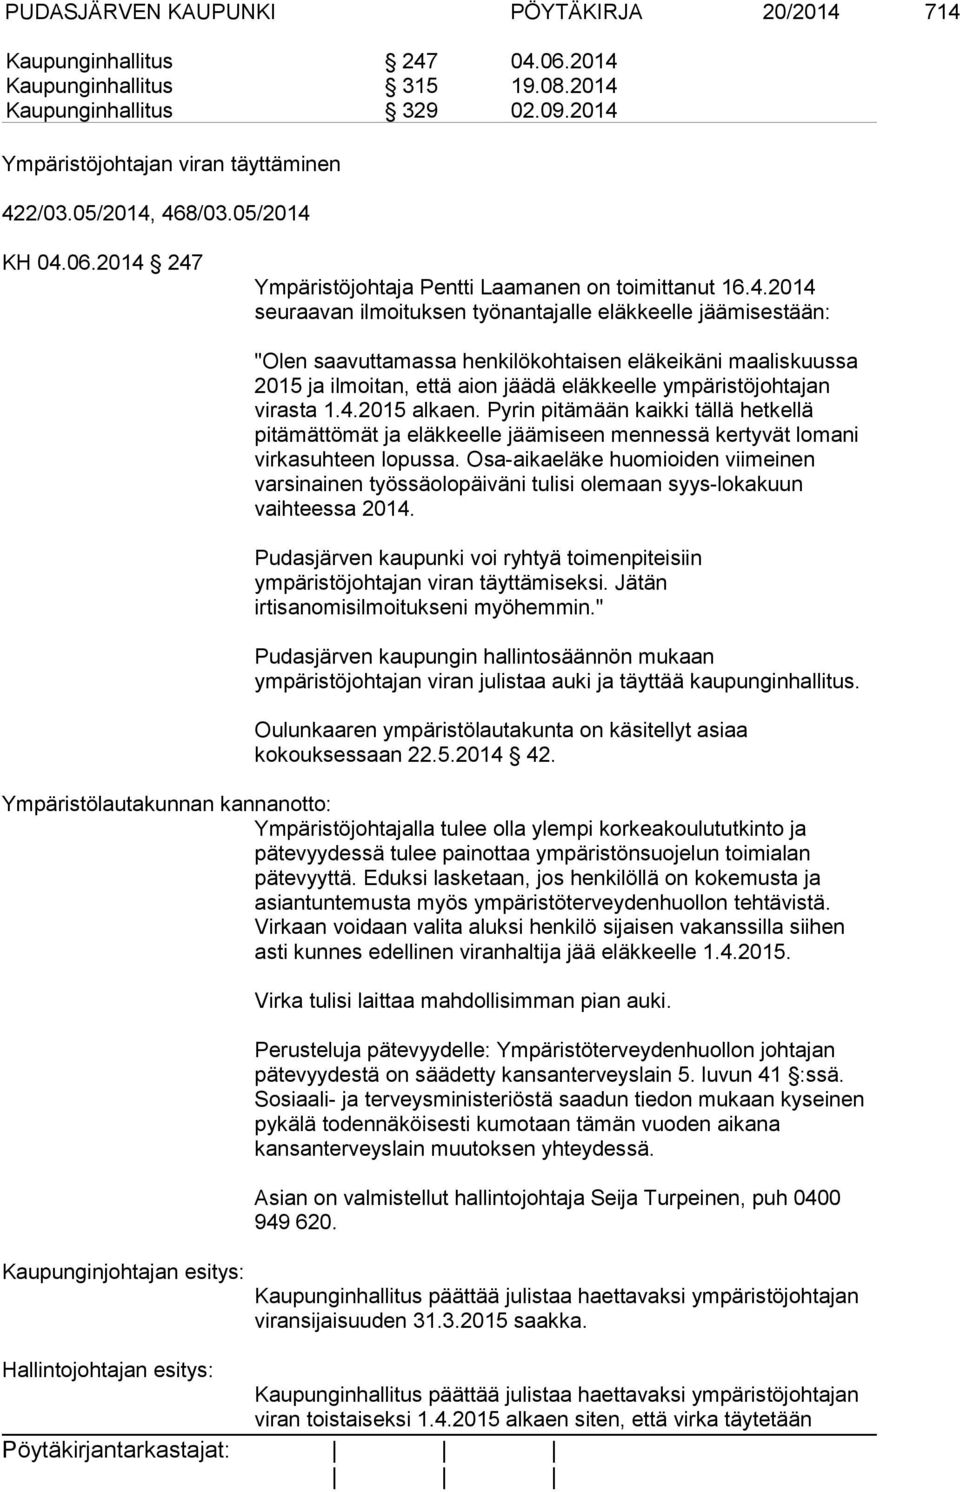 468/03.05/2014 KH 04.06.2014 247 Ympäristöjohtaja Pentti Laamanen on toimittanut 16.4.2014 seuraavan ilmoituksen työnantajalle eläkkeelle jäämisestään: "Olen saavuttamassa henkilökohtaisen eläkeikäni